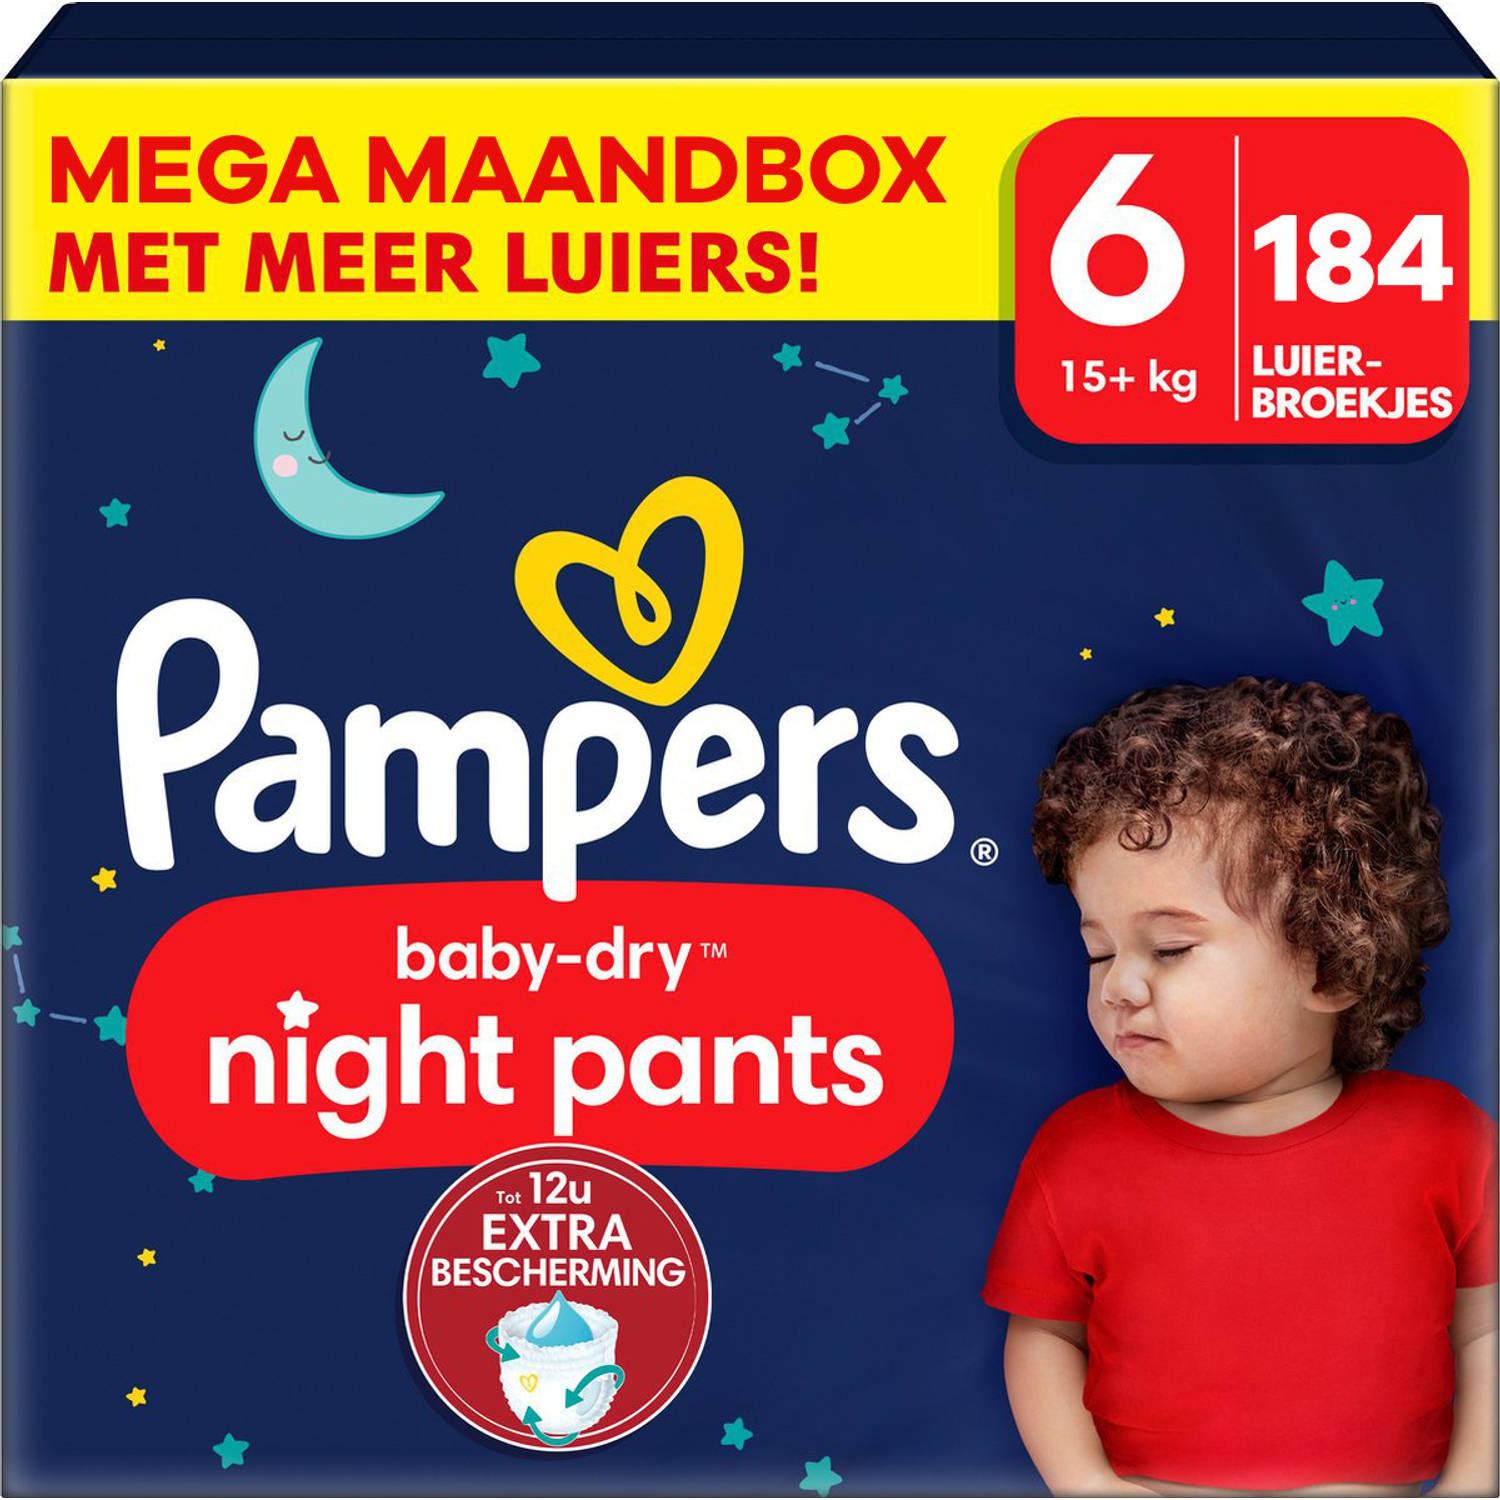 Pampers Baby Dry Night Pants Maat 6 Mega Maandbox 184 luierbroekjes